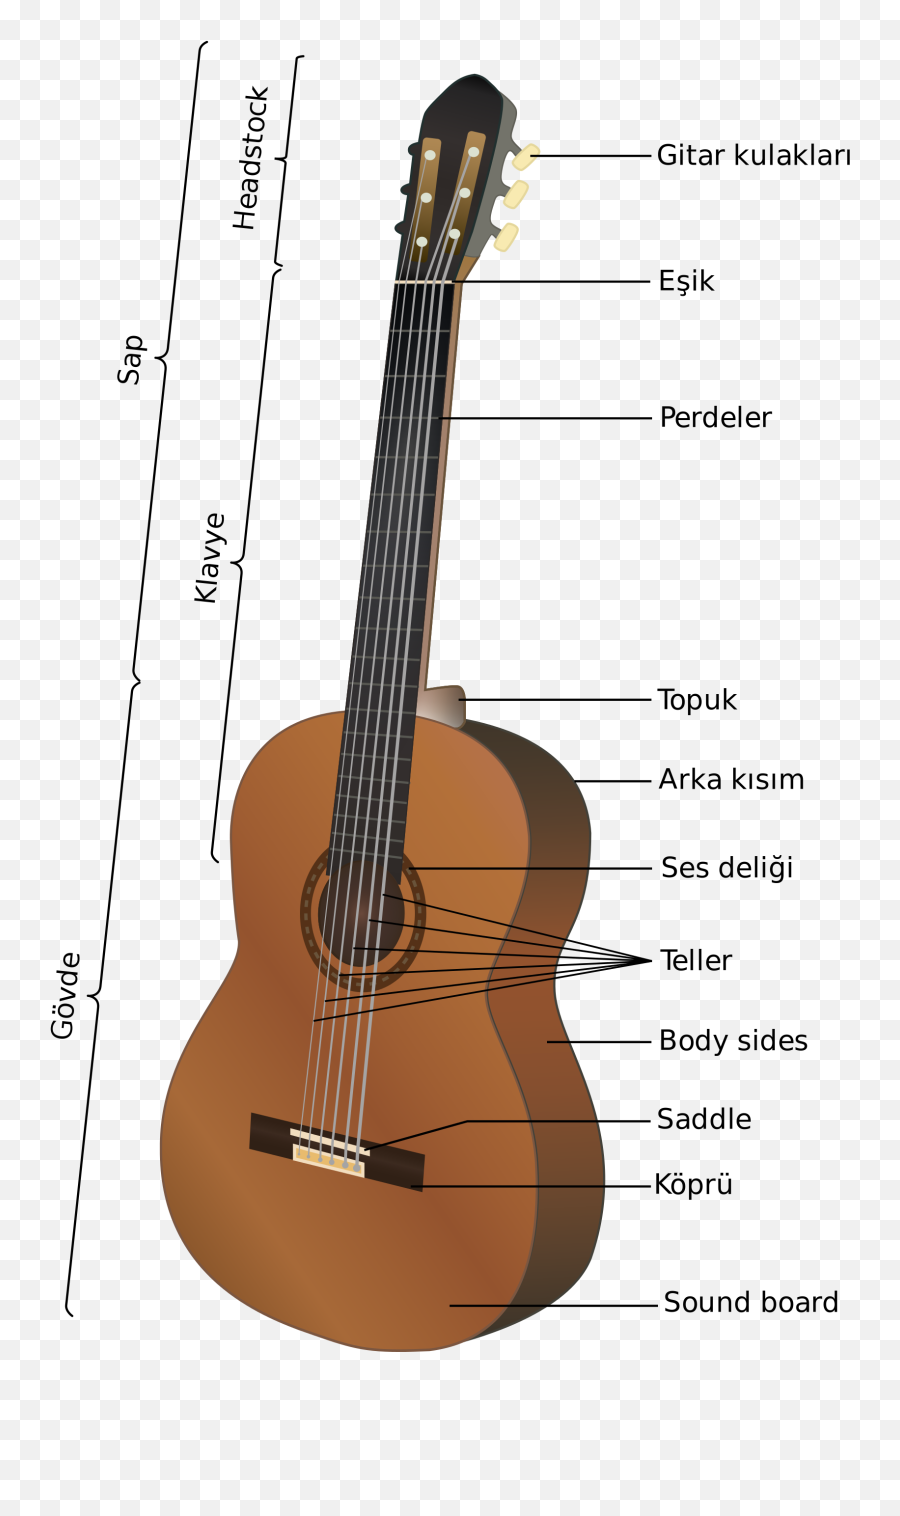 Download Open - Partes De La Guitarra Full Size Png Image Long Part Of A Guitar Called Emoji,Guitarra Png